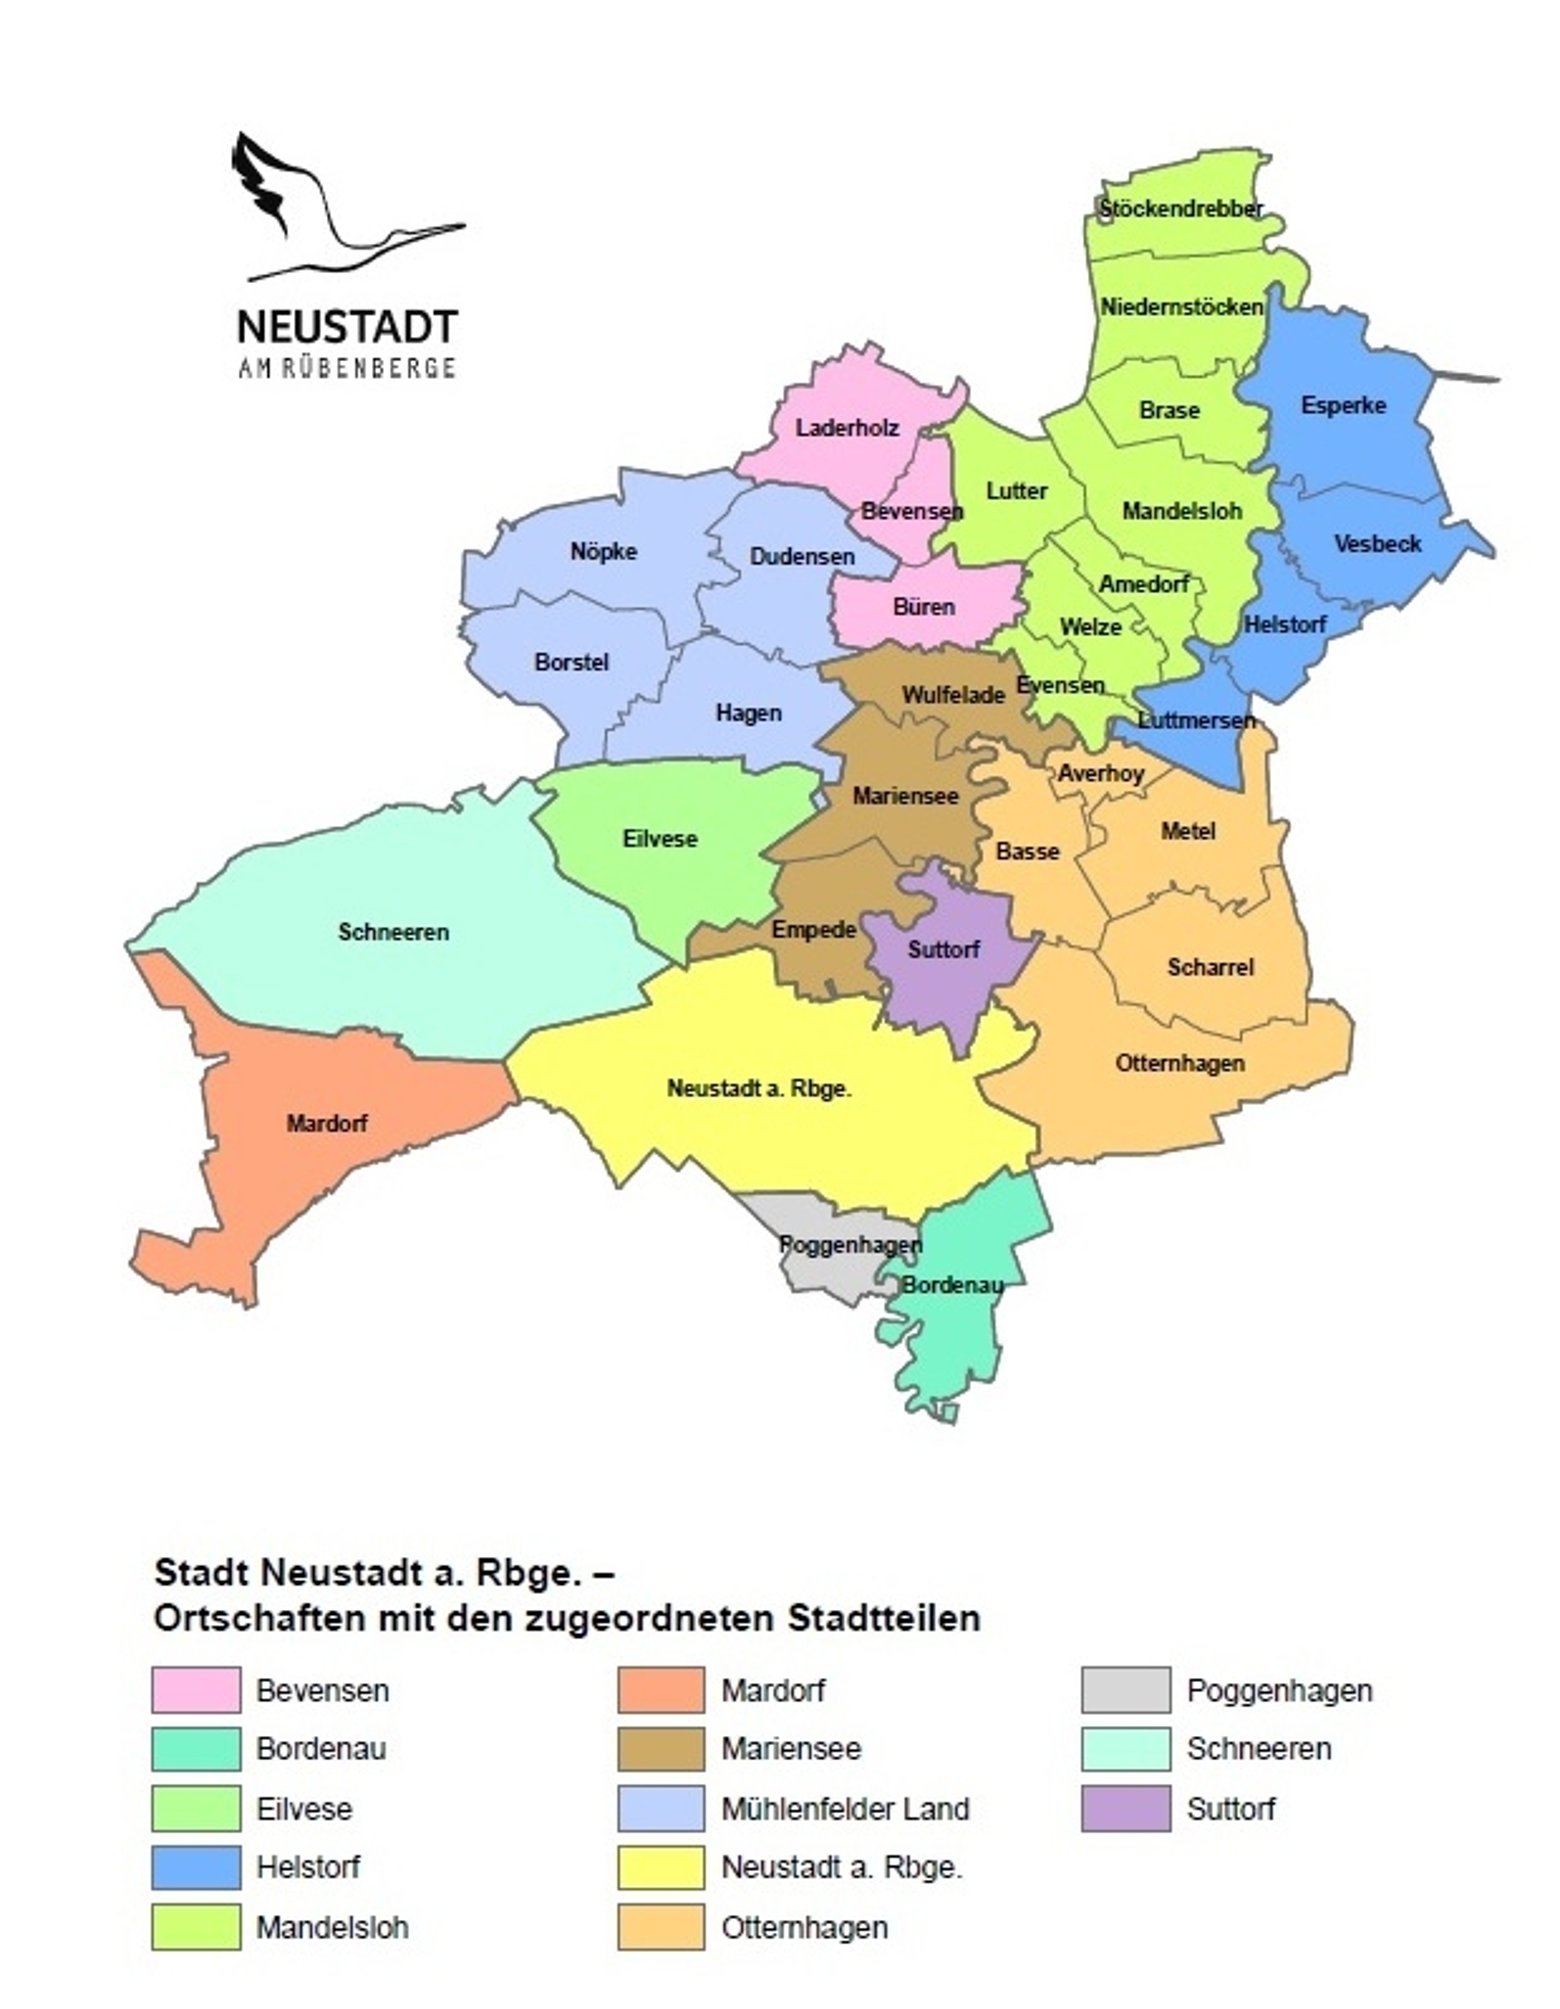 Ortschaften | Stadtverwaltung Neustadt am Rübenberge